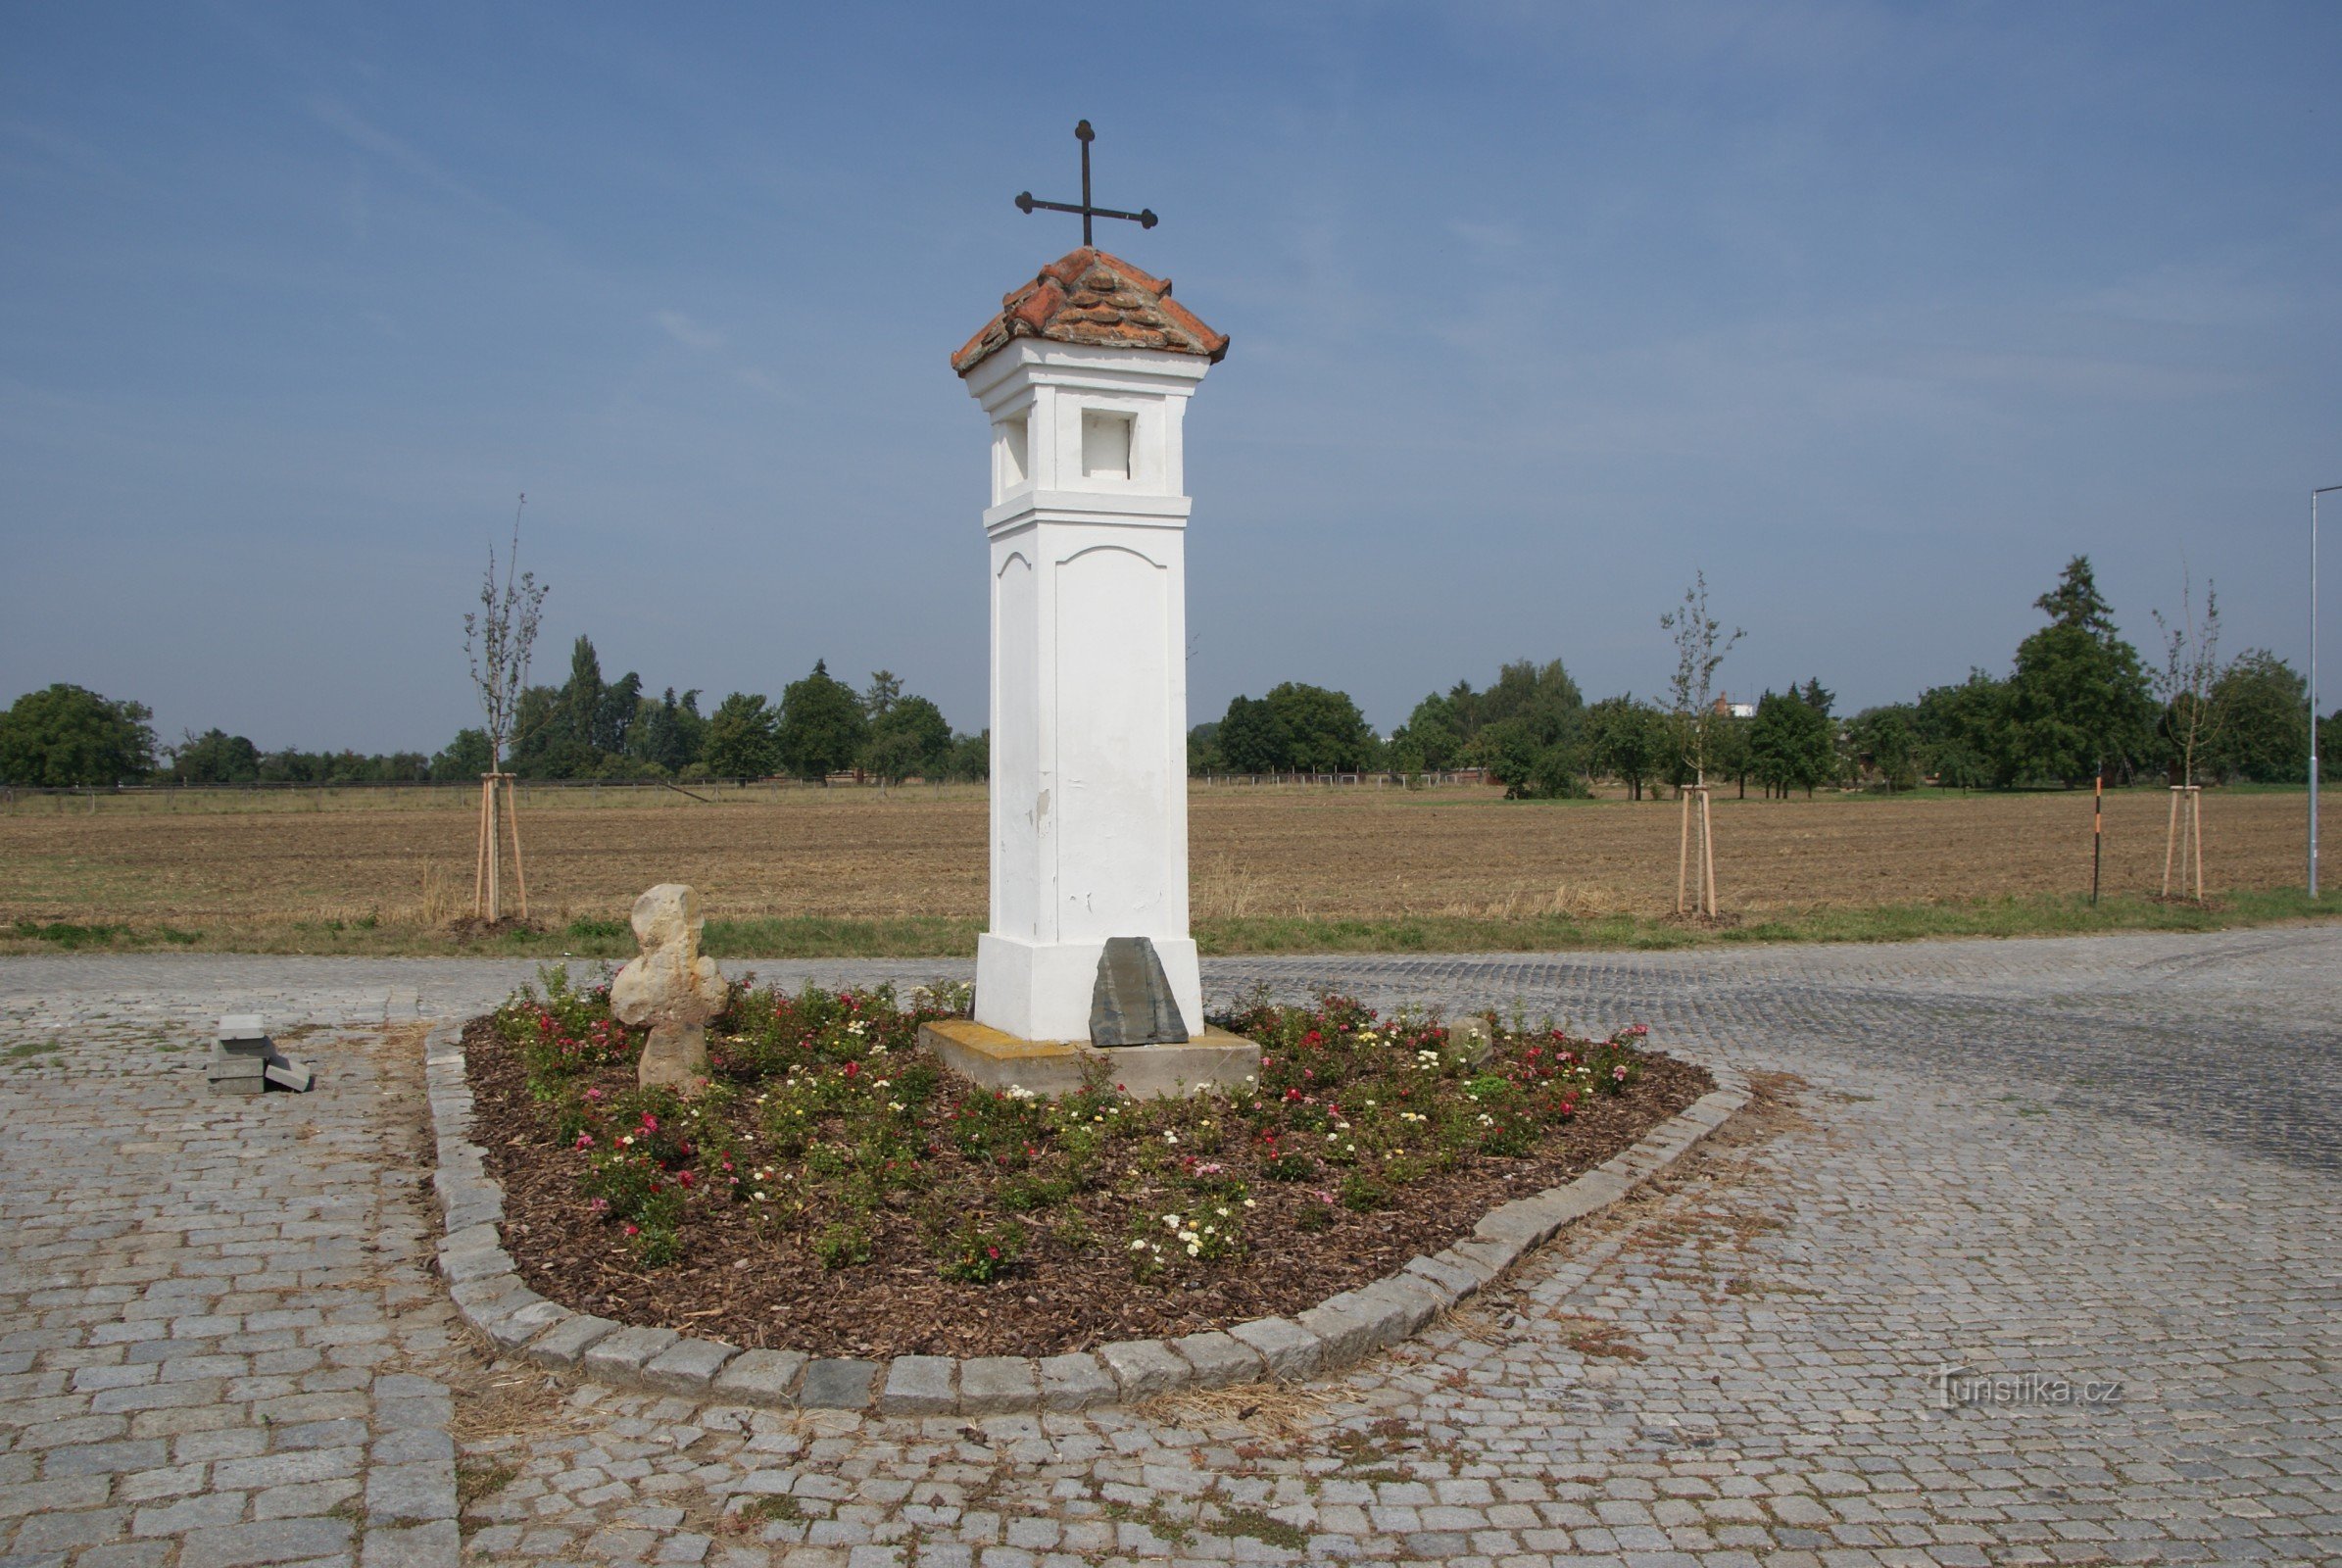 Ордени (біля Оломоуца) – «новий» мирний хрест у сільськогосподарських масштабах